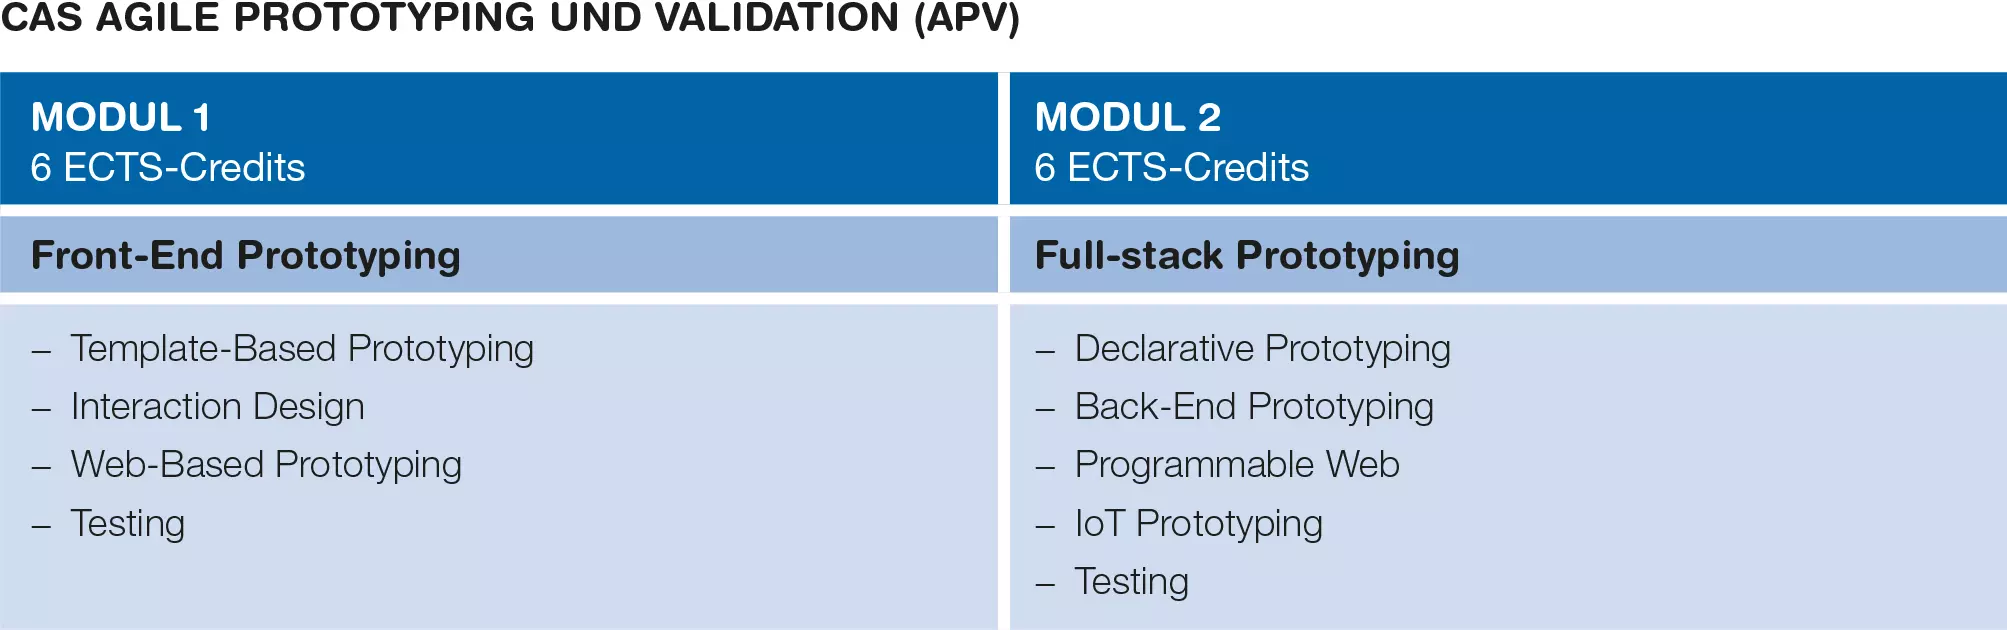 Modulübersicht CAS Agile Prototyping und Validation